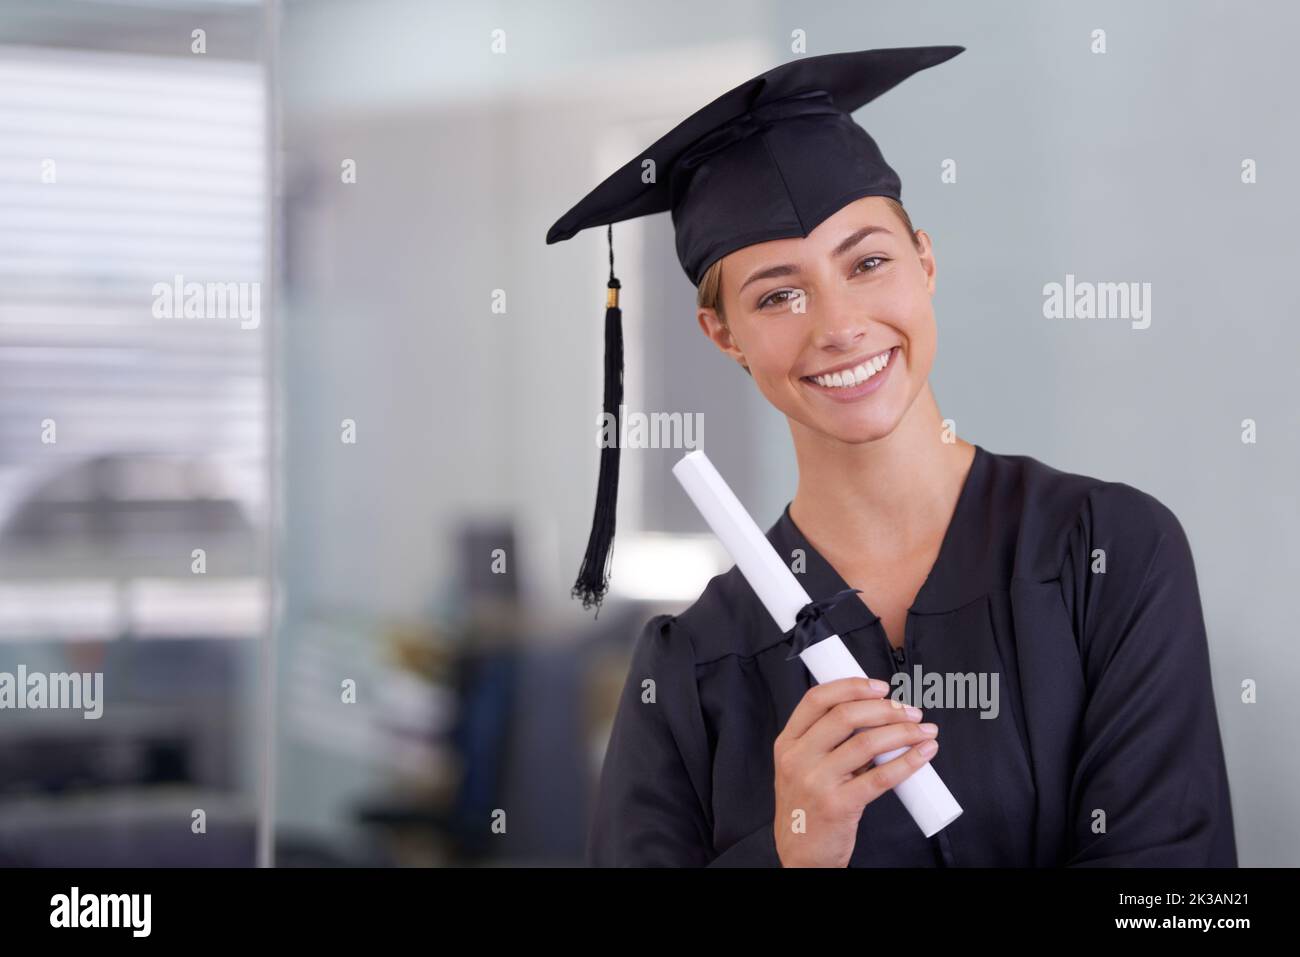 Il mondo è ora la sua ostrica. Ritratto di una giovane donna in un abito di laurea in possesso di un diploma. Foto Stock